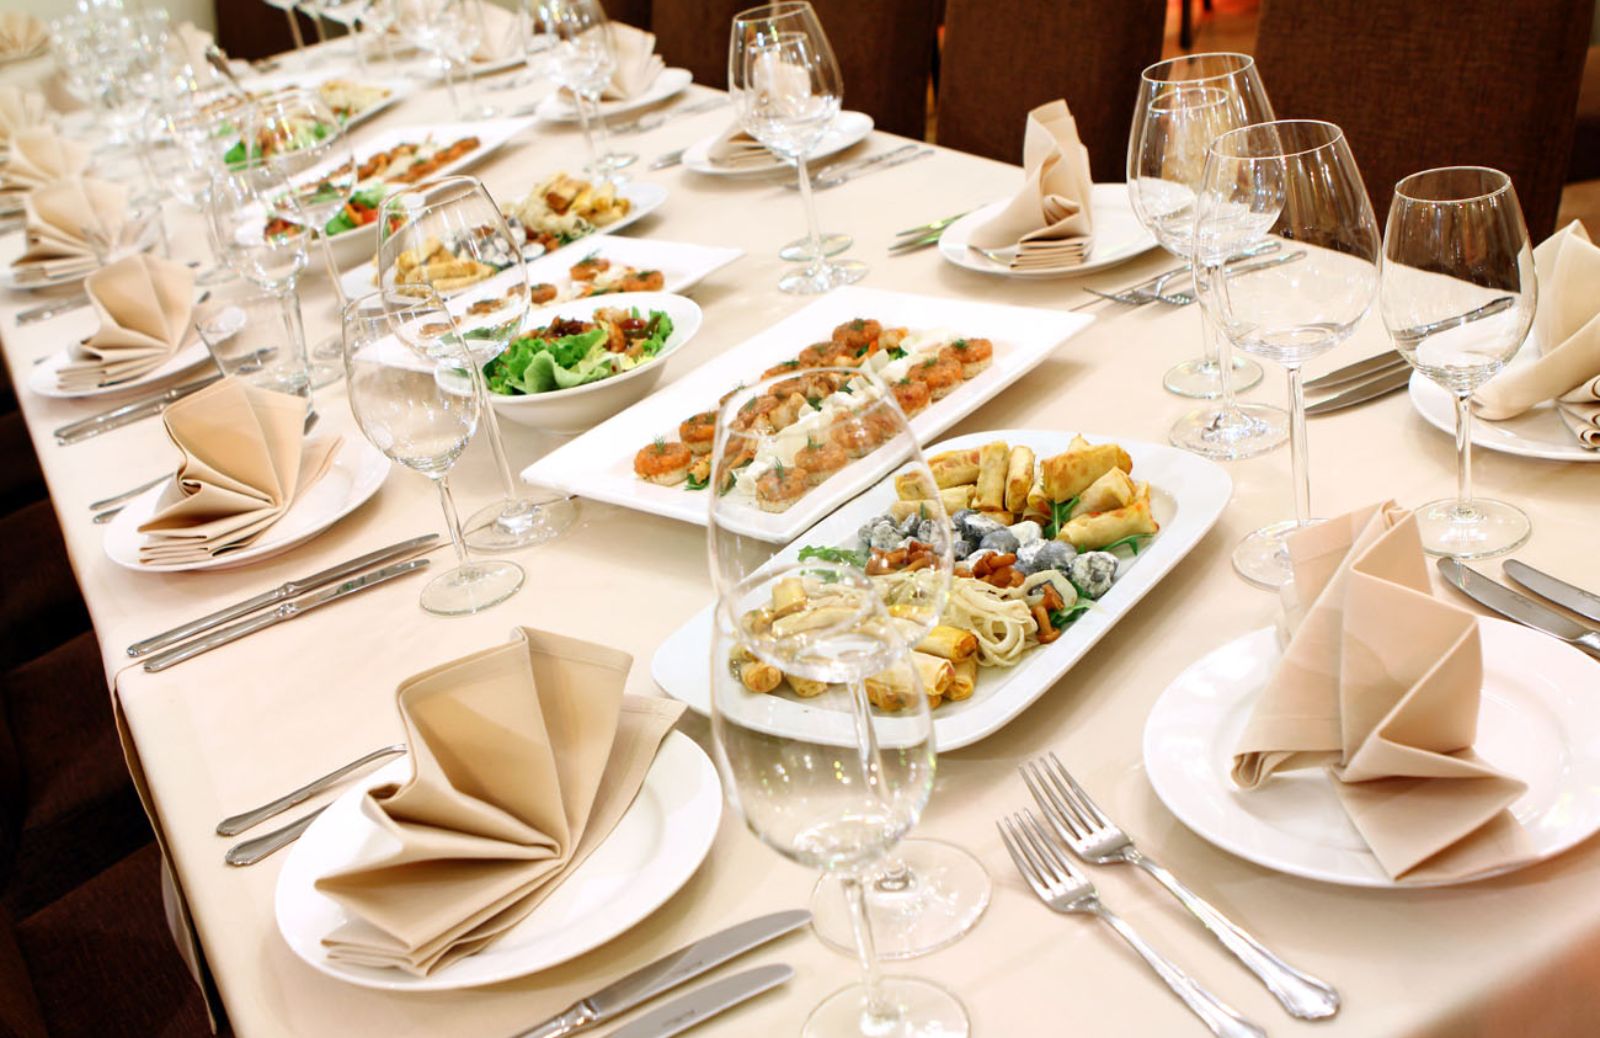 Come servire il pranzo e disporre gli ospiti a tavola